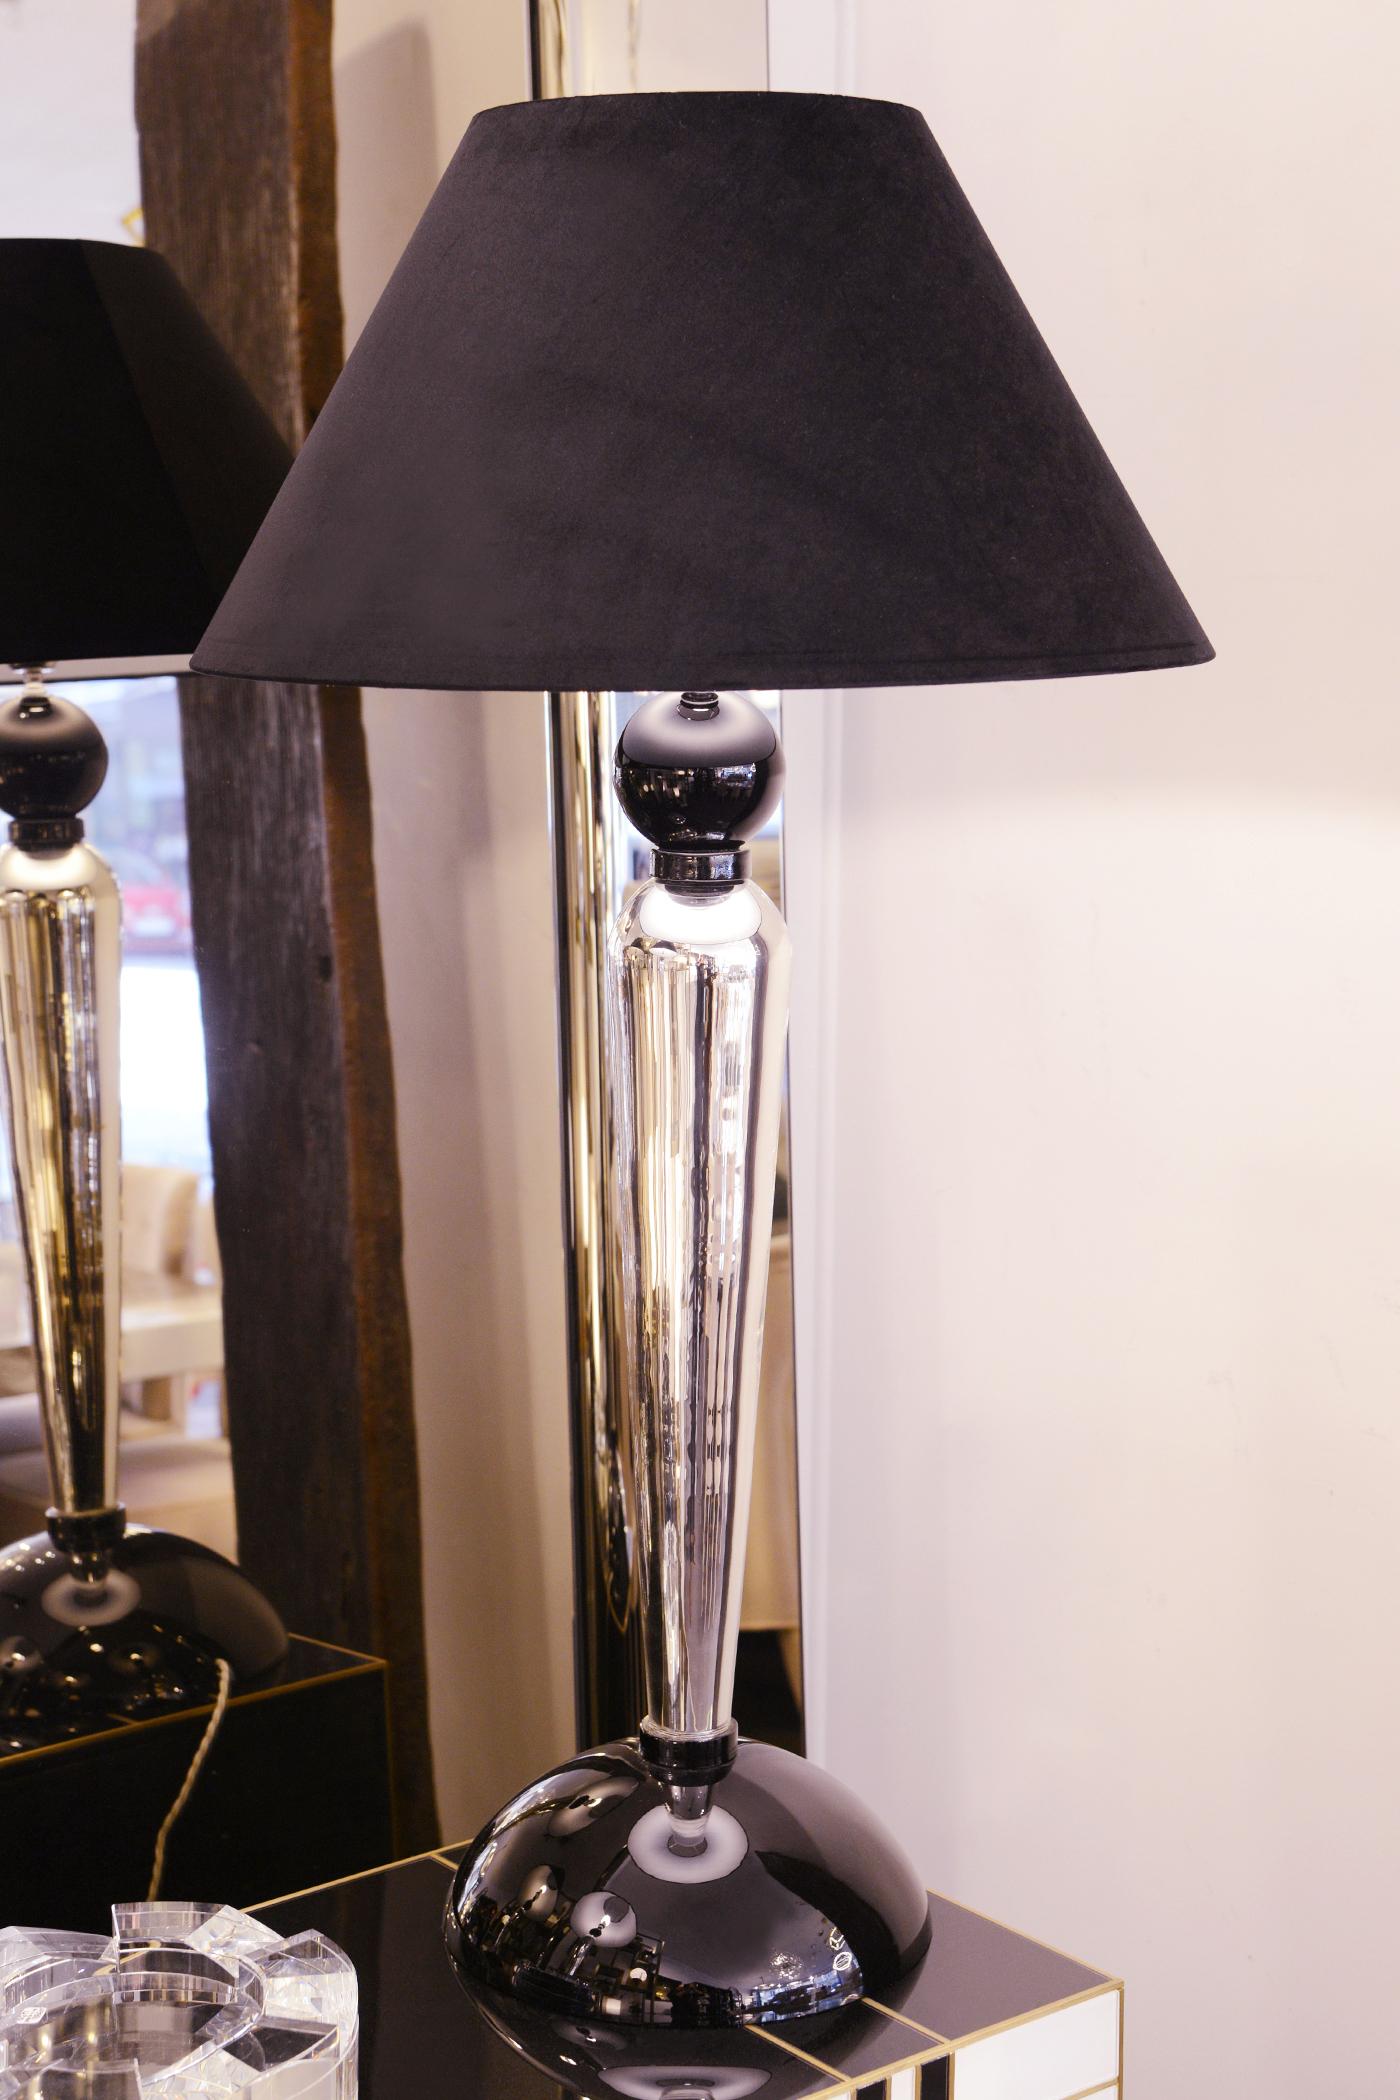 Lampe de table haute en verre de Murano, ensemble de 2, avec base en verre de Murano.
verre de Murano en finition verre argenté et en finition verre noir.
Diamètre de la base : 28,5cm. Avec abat-jour en tissu coton noir inclus.
Support de lampe de